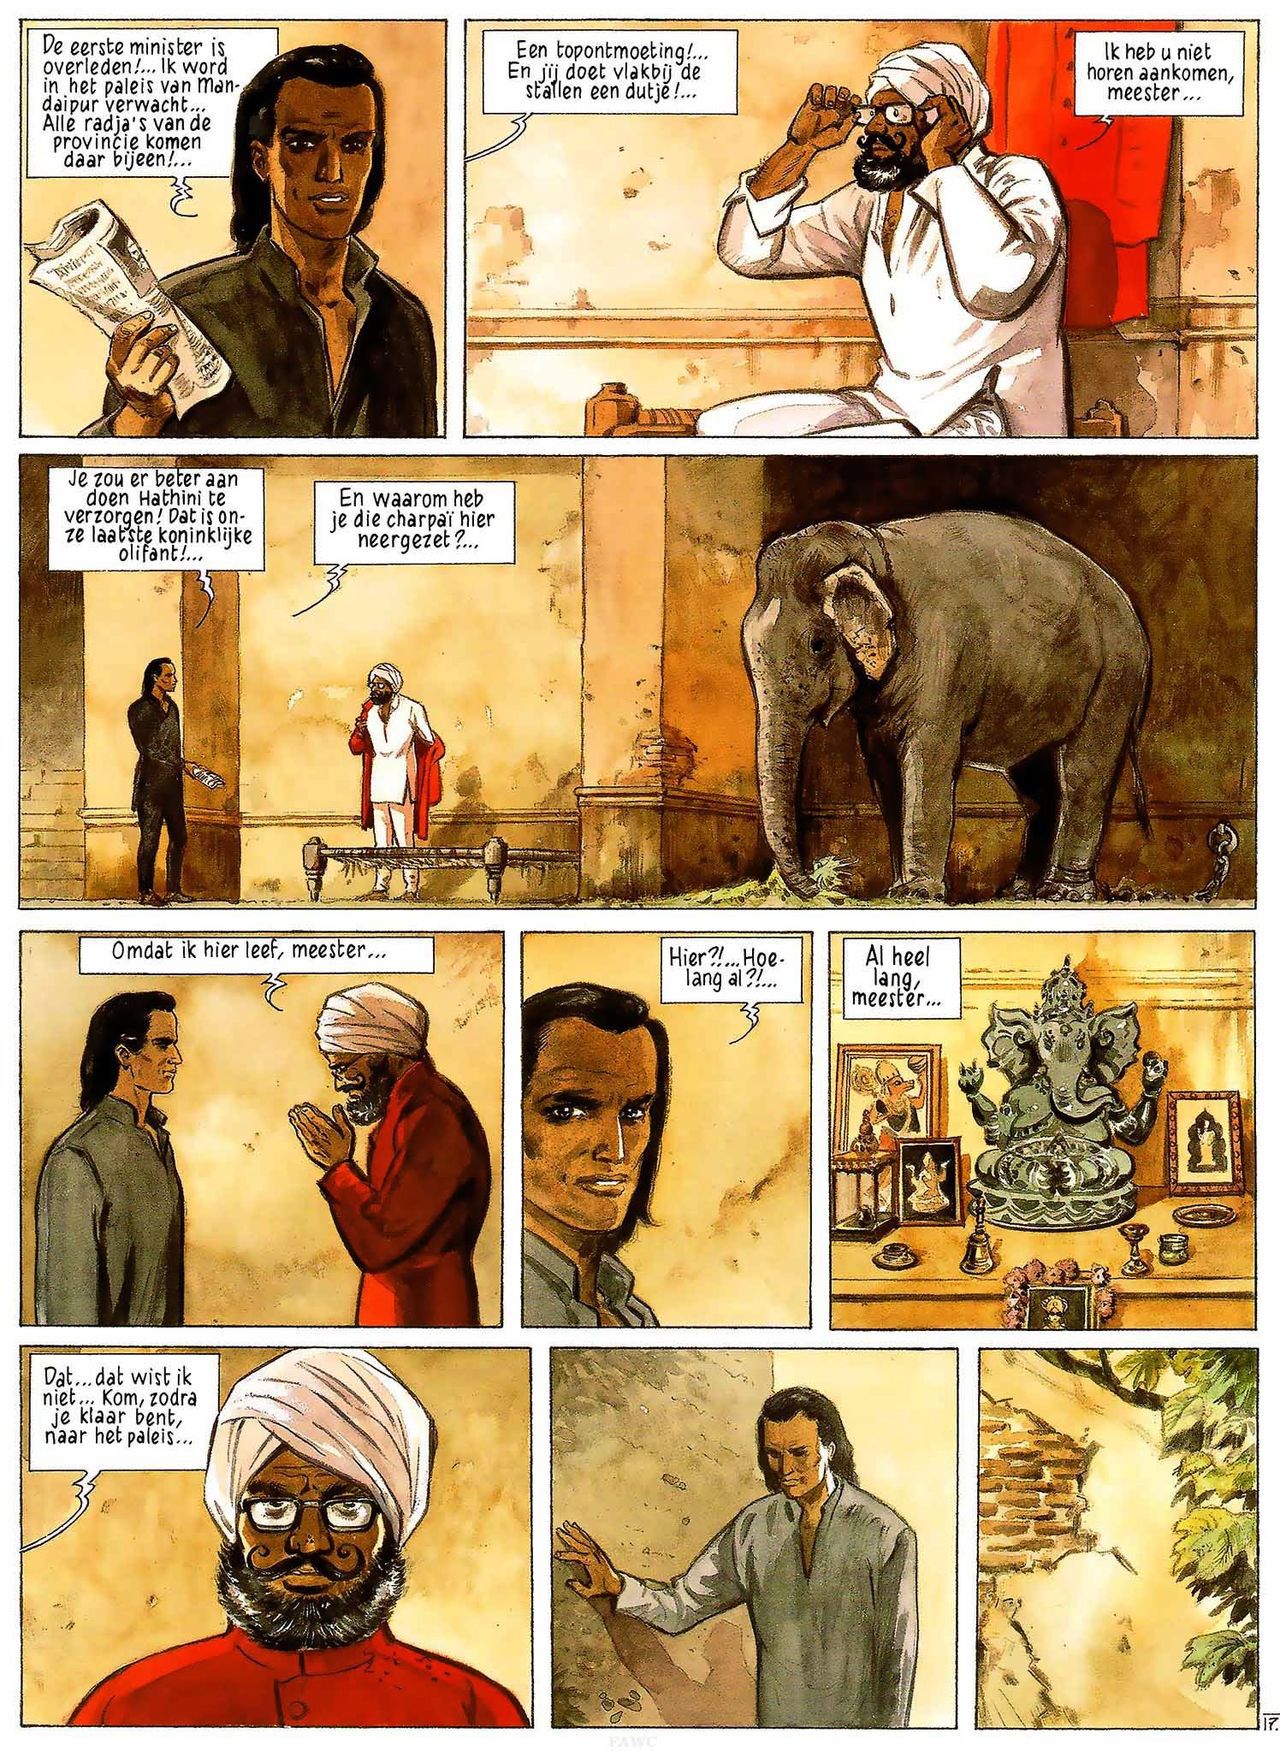 India Dreams - 03 - In De Schaduw Van De Bougainvilles (Dutch) Engelstalige en Duitse strips die op deze site staan, hier is de Nederlandse uitgave! 19